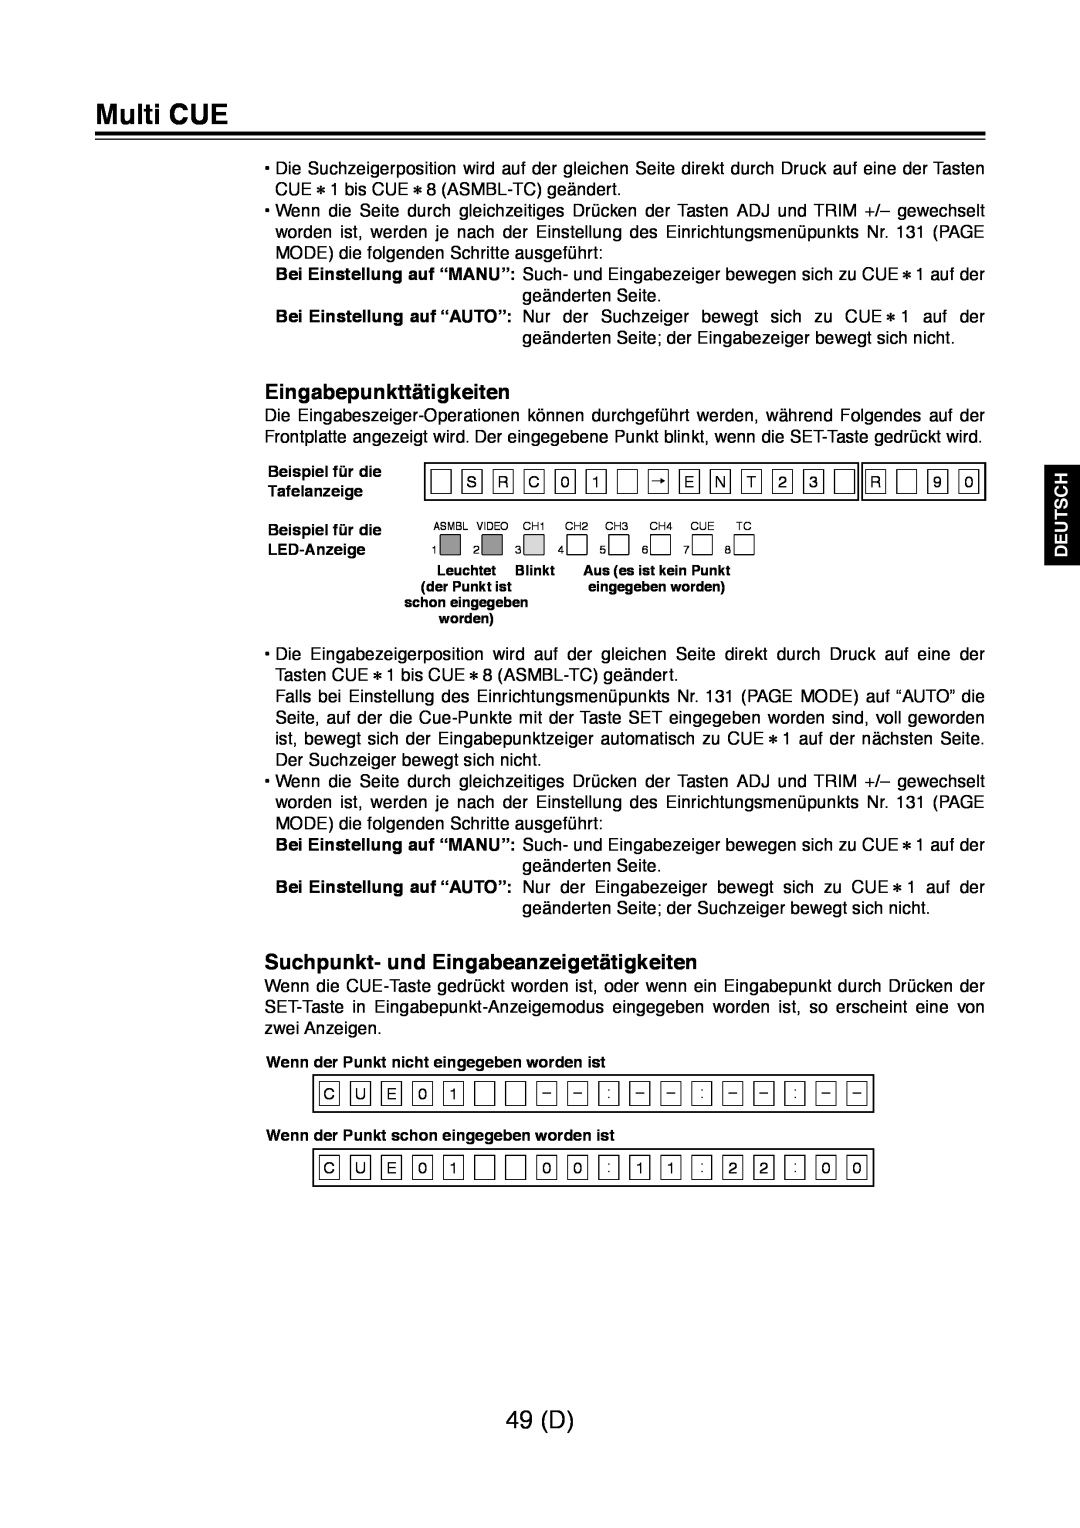 Panasonic AJ-D960 49 D, Eingabepunkttätigkeiten, Suchpunkt- und Eingabeanzeigetätigkeiten, Multi CUE, Deutsch 